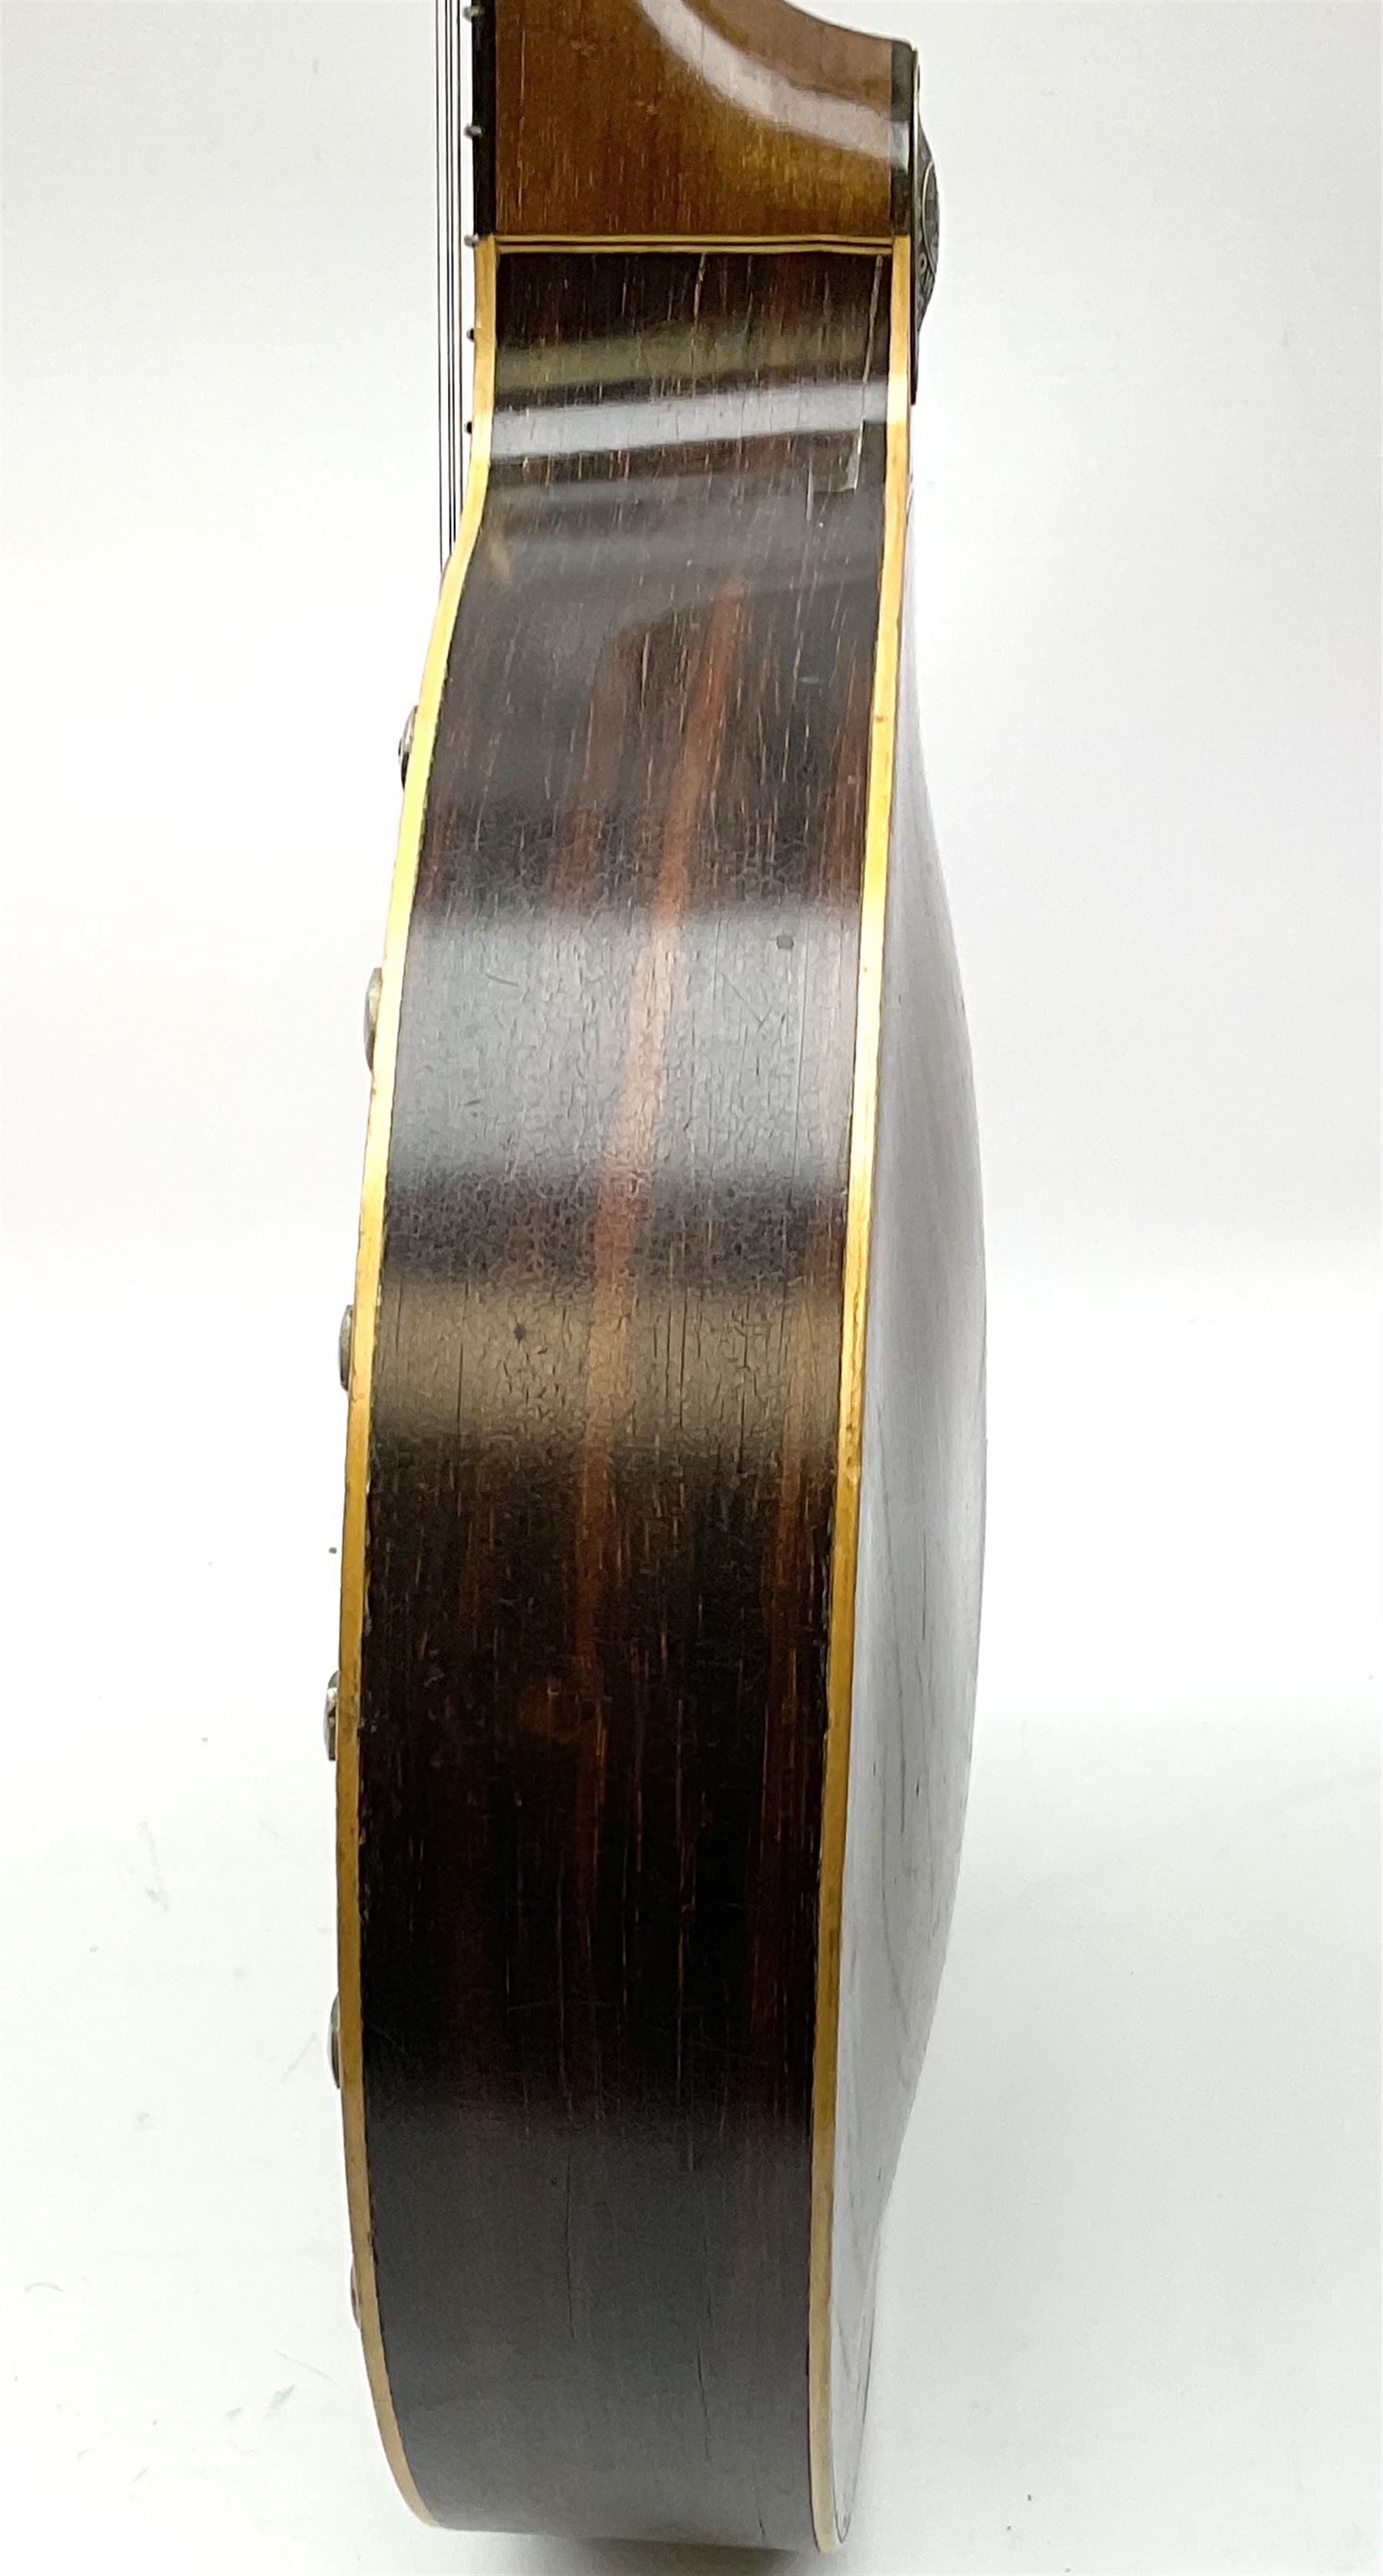 The Windsor Popular Model 5 five string closed back banjo - Image 9 of 21